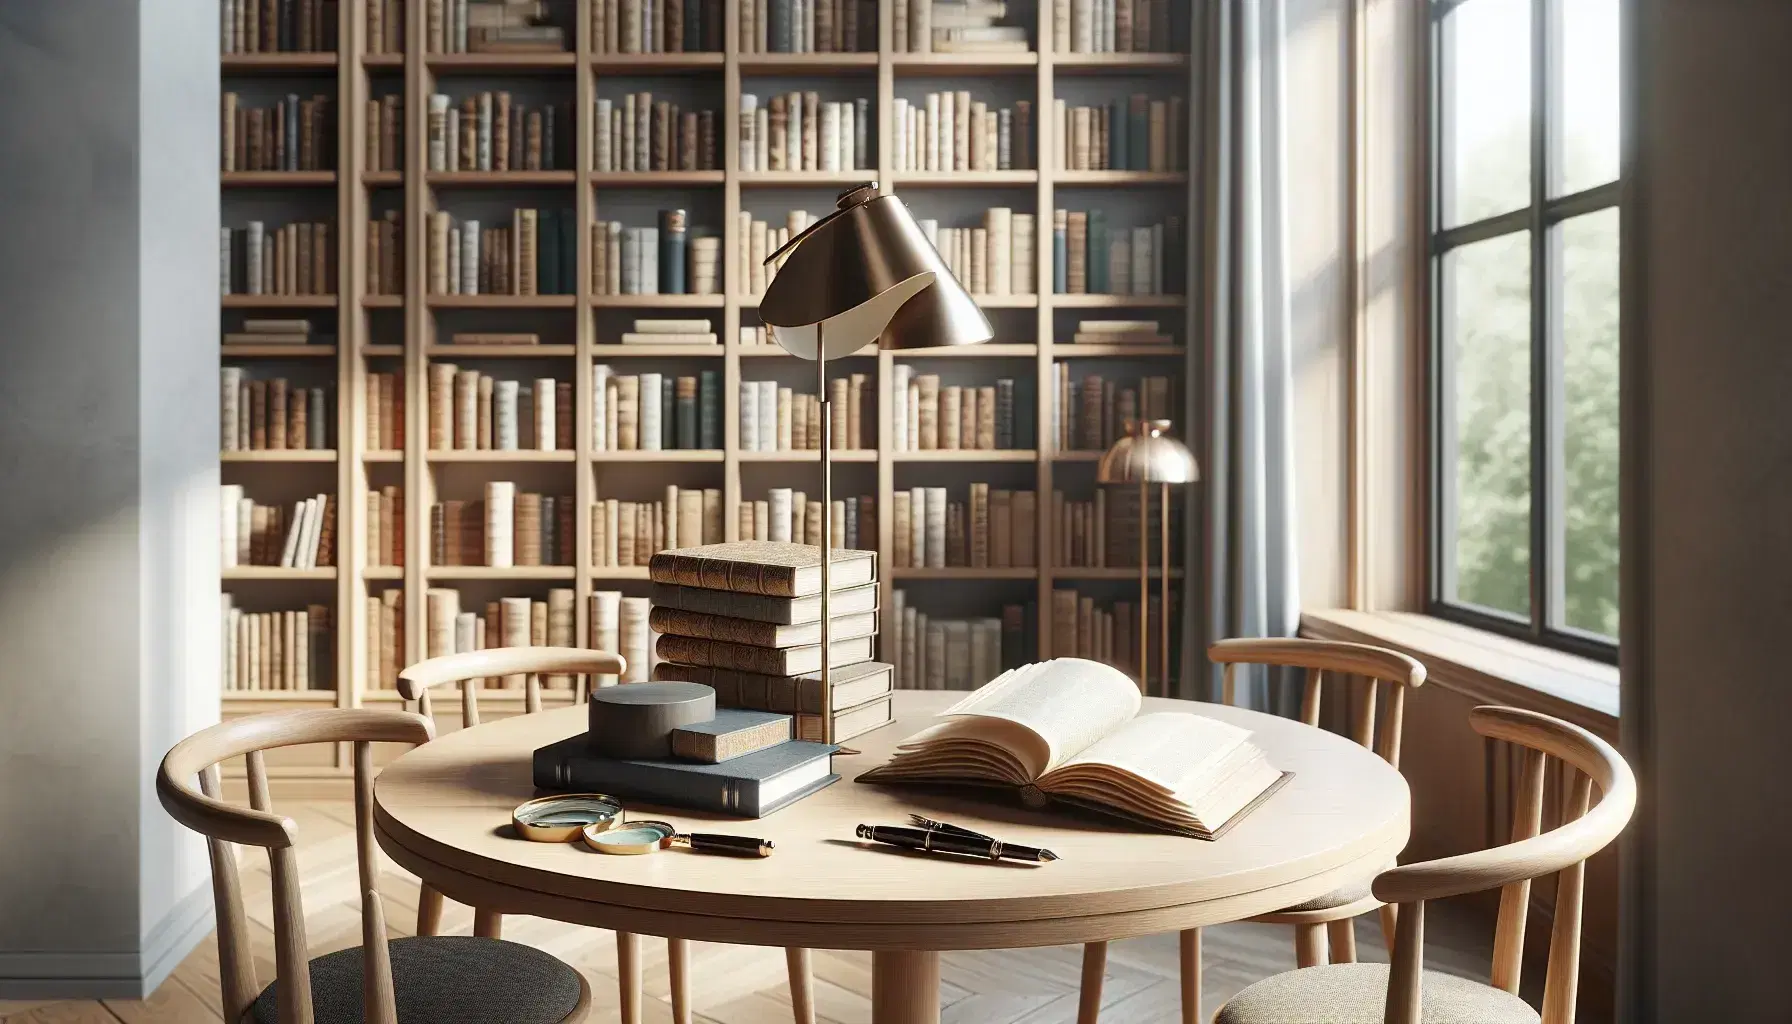 Biblioteca acogedora con estanterías de madera llenas de libros, mesa redonda con libros abiertos, lupa y pluma, iluminada por lámpara de pie y ventana con vista a árboles.